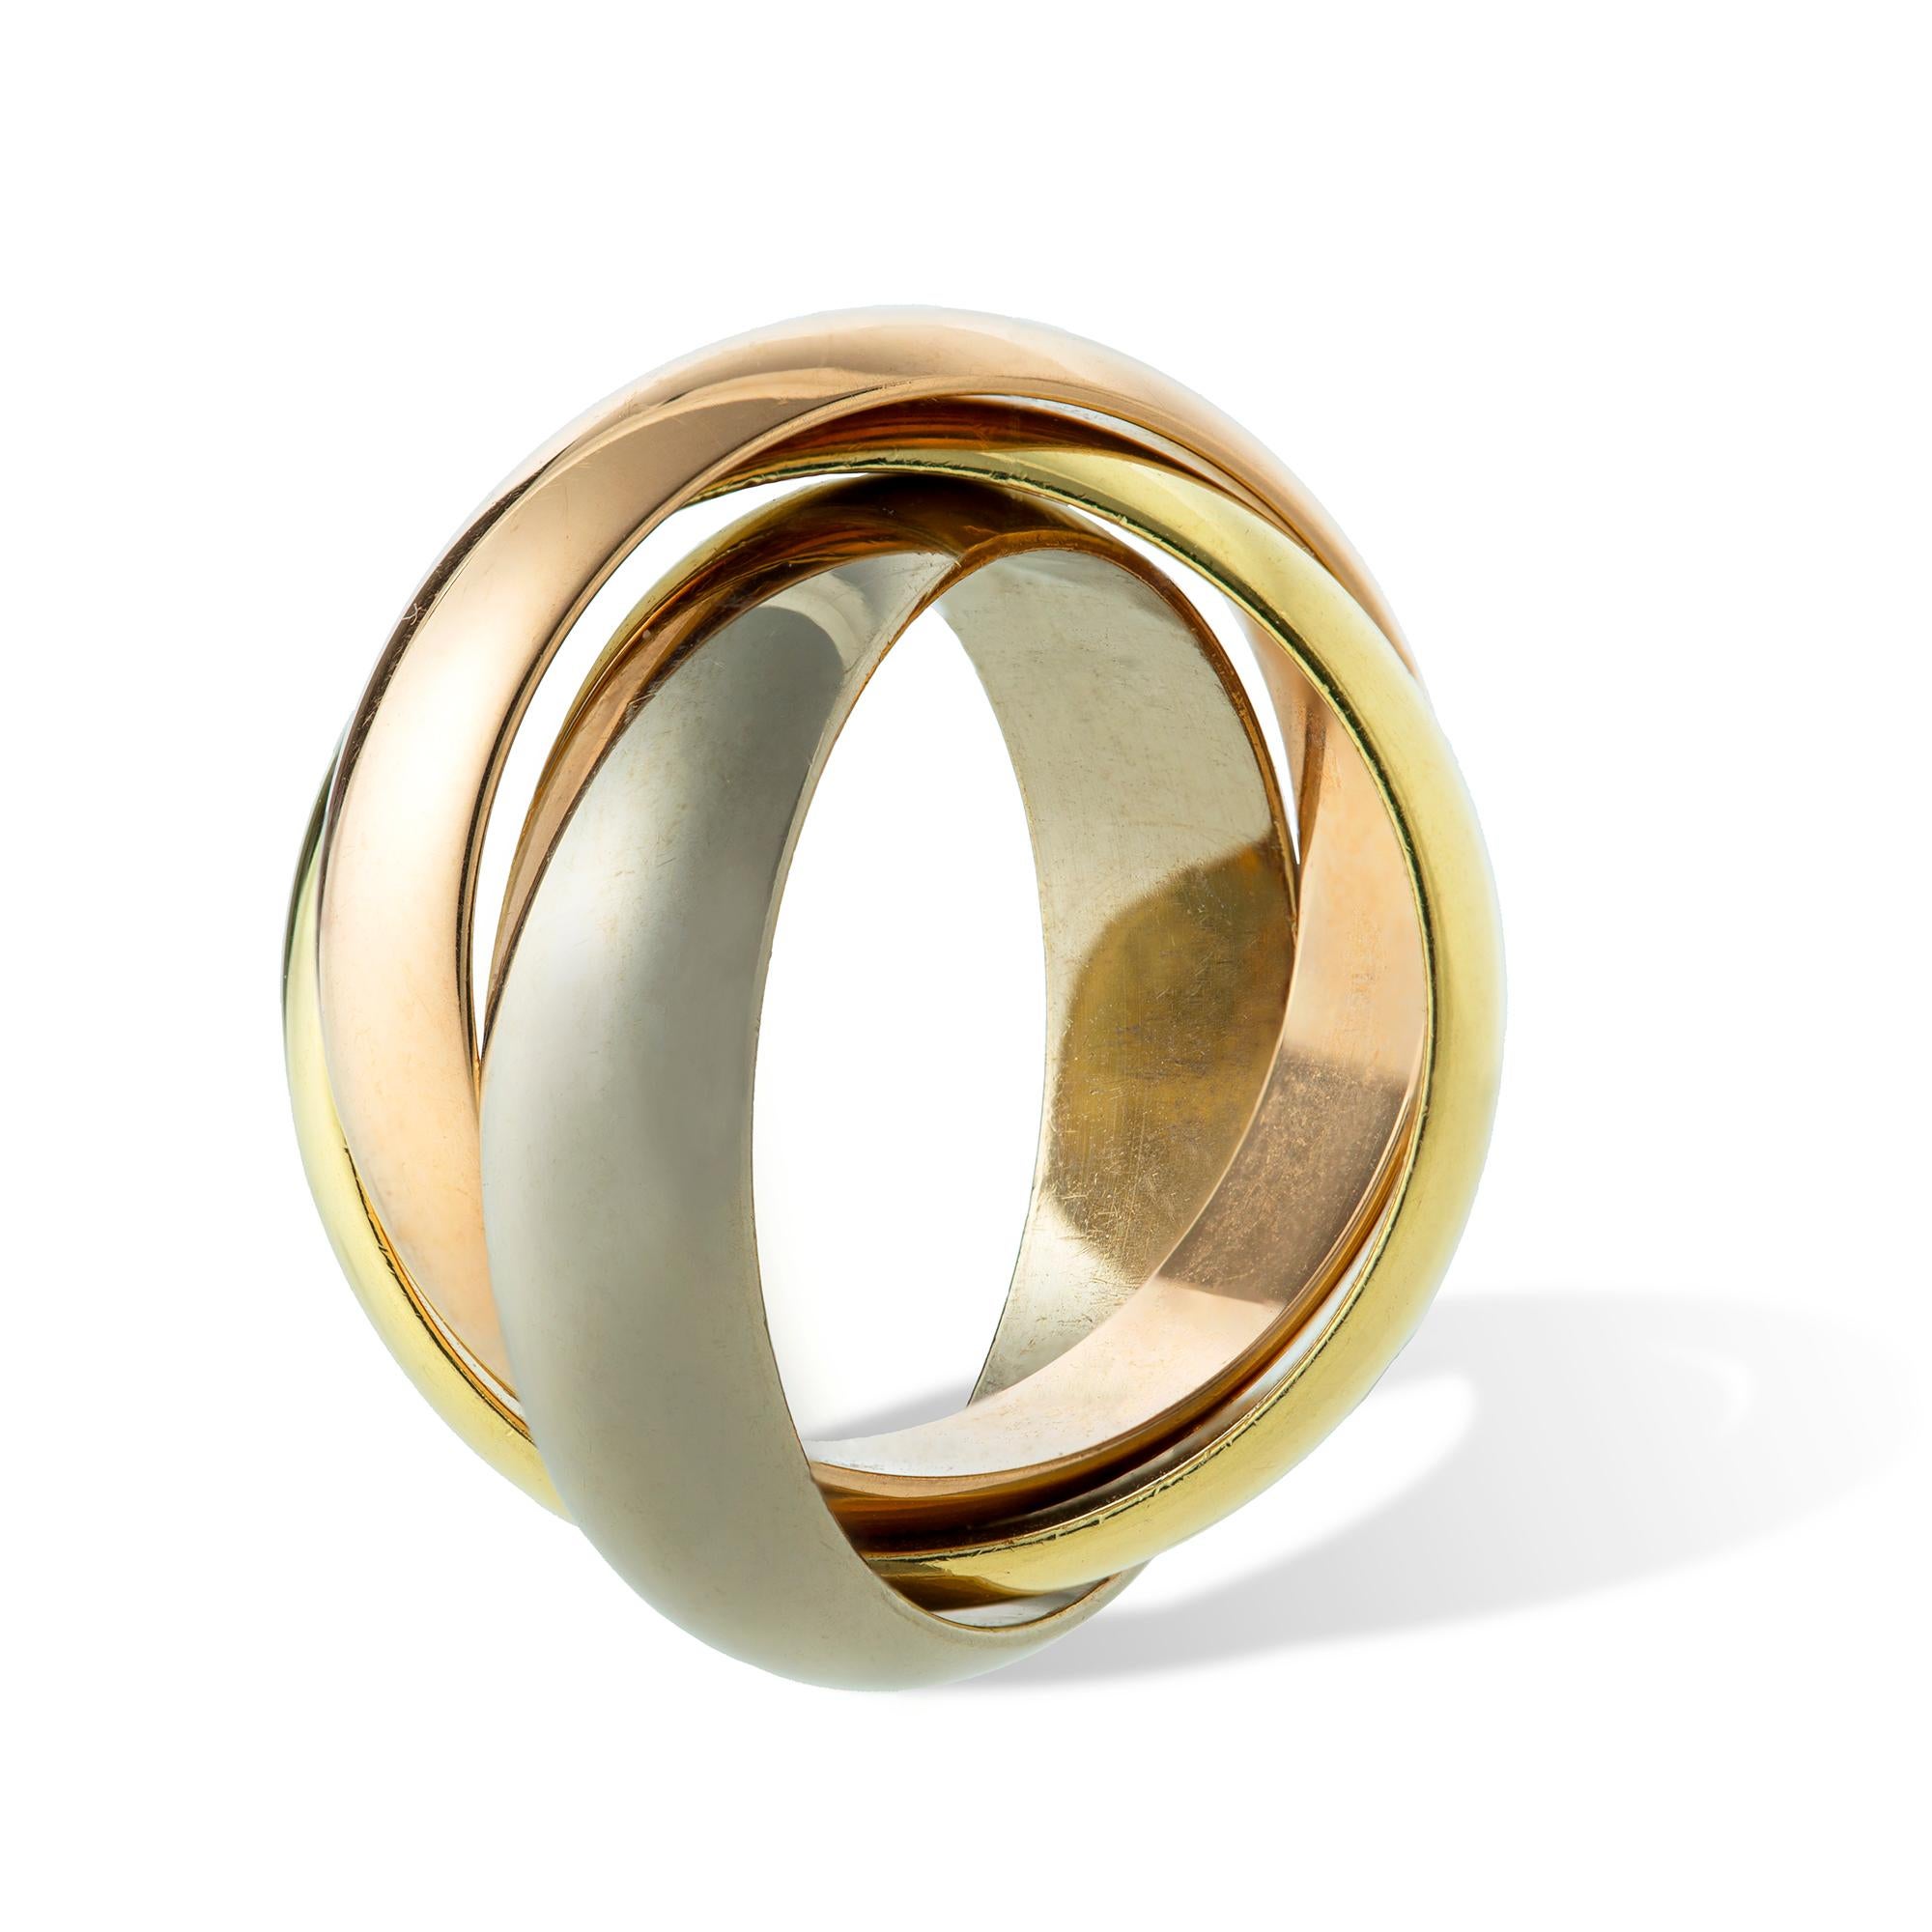 Ein Cartier Trinity Ehering mit drei Ringen aus 18 Karat Weiß-, Rosé- und Gelbgold,  signiert Cartier,  mit der französischen Punze für 750 und der Konventionspunze,  mit einer Breite von ca. 1 cm und einem Bruttogewicht von 14,59 g. Fingergröße